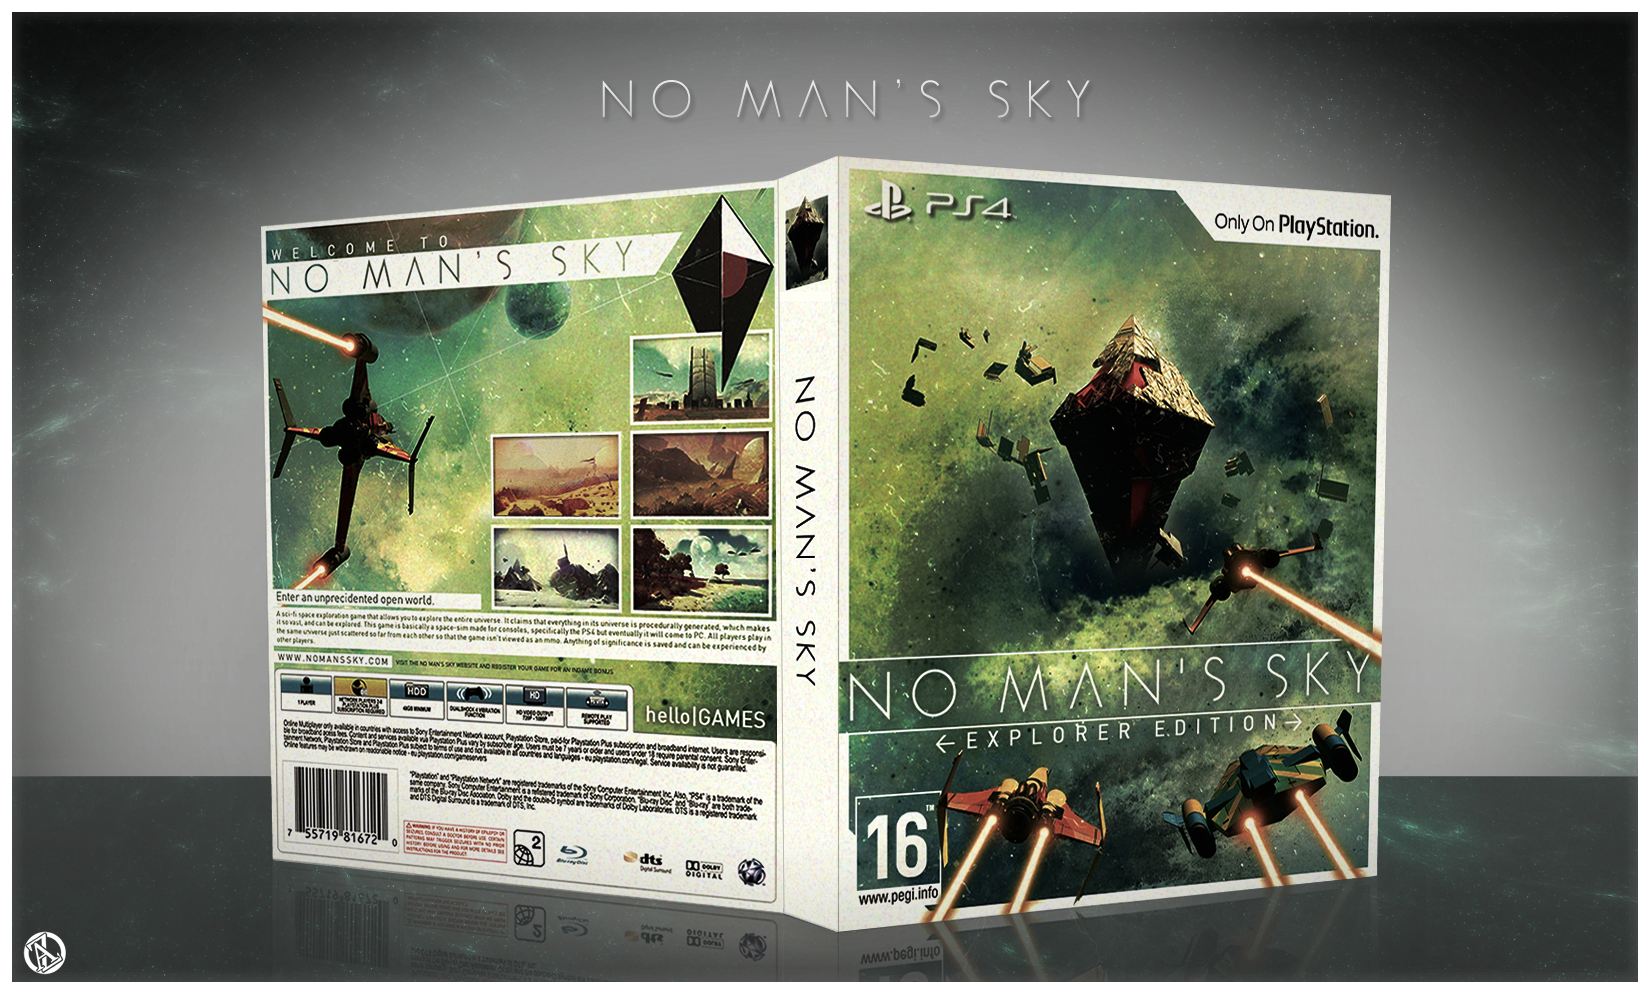 No Man's Sky: Explorer Edition box cover